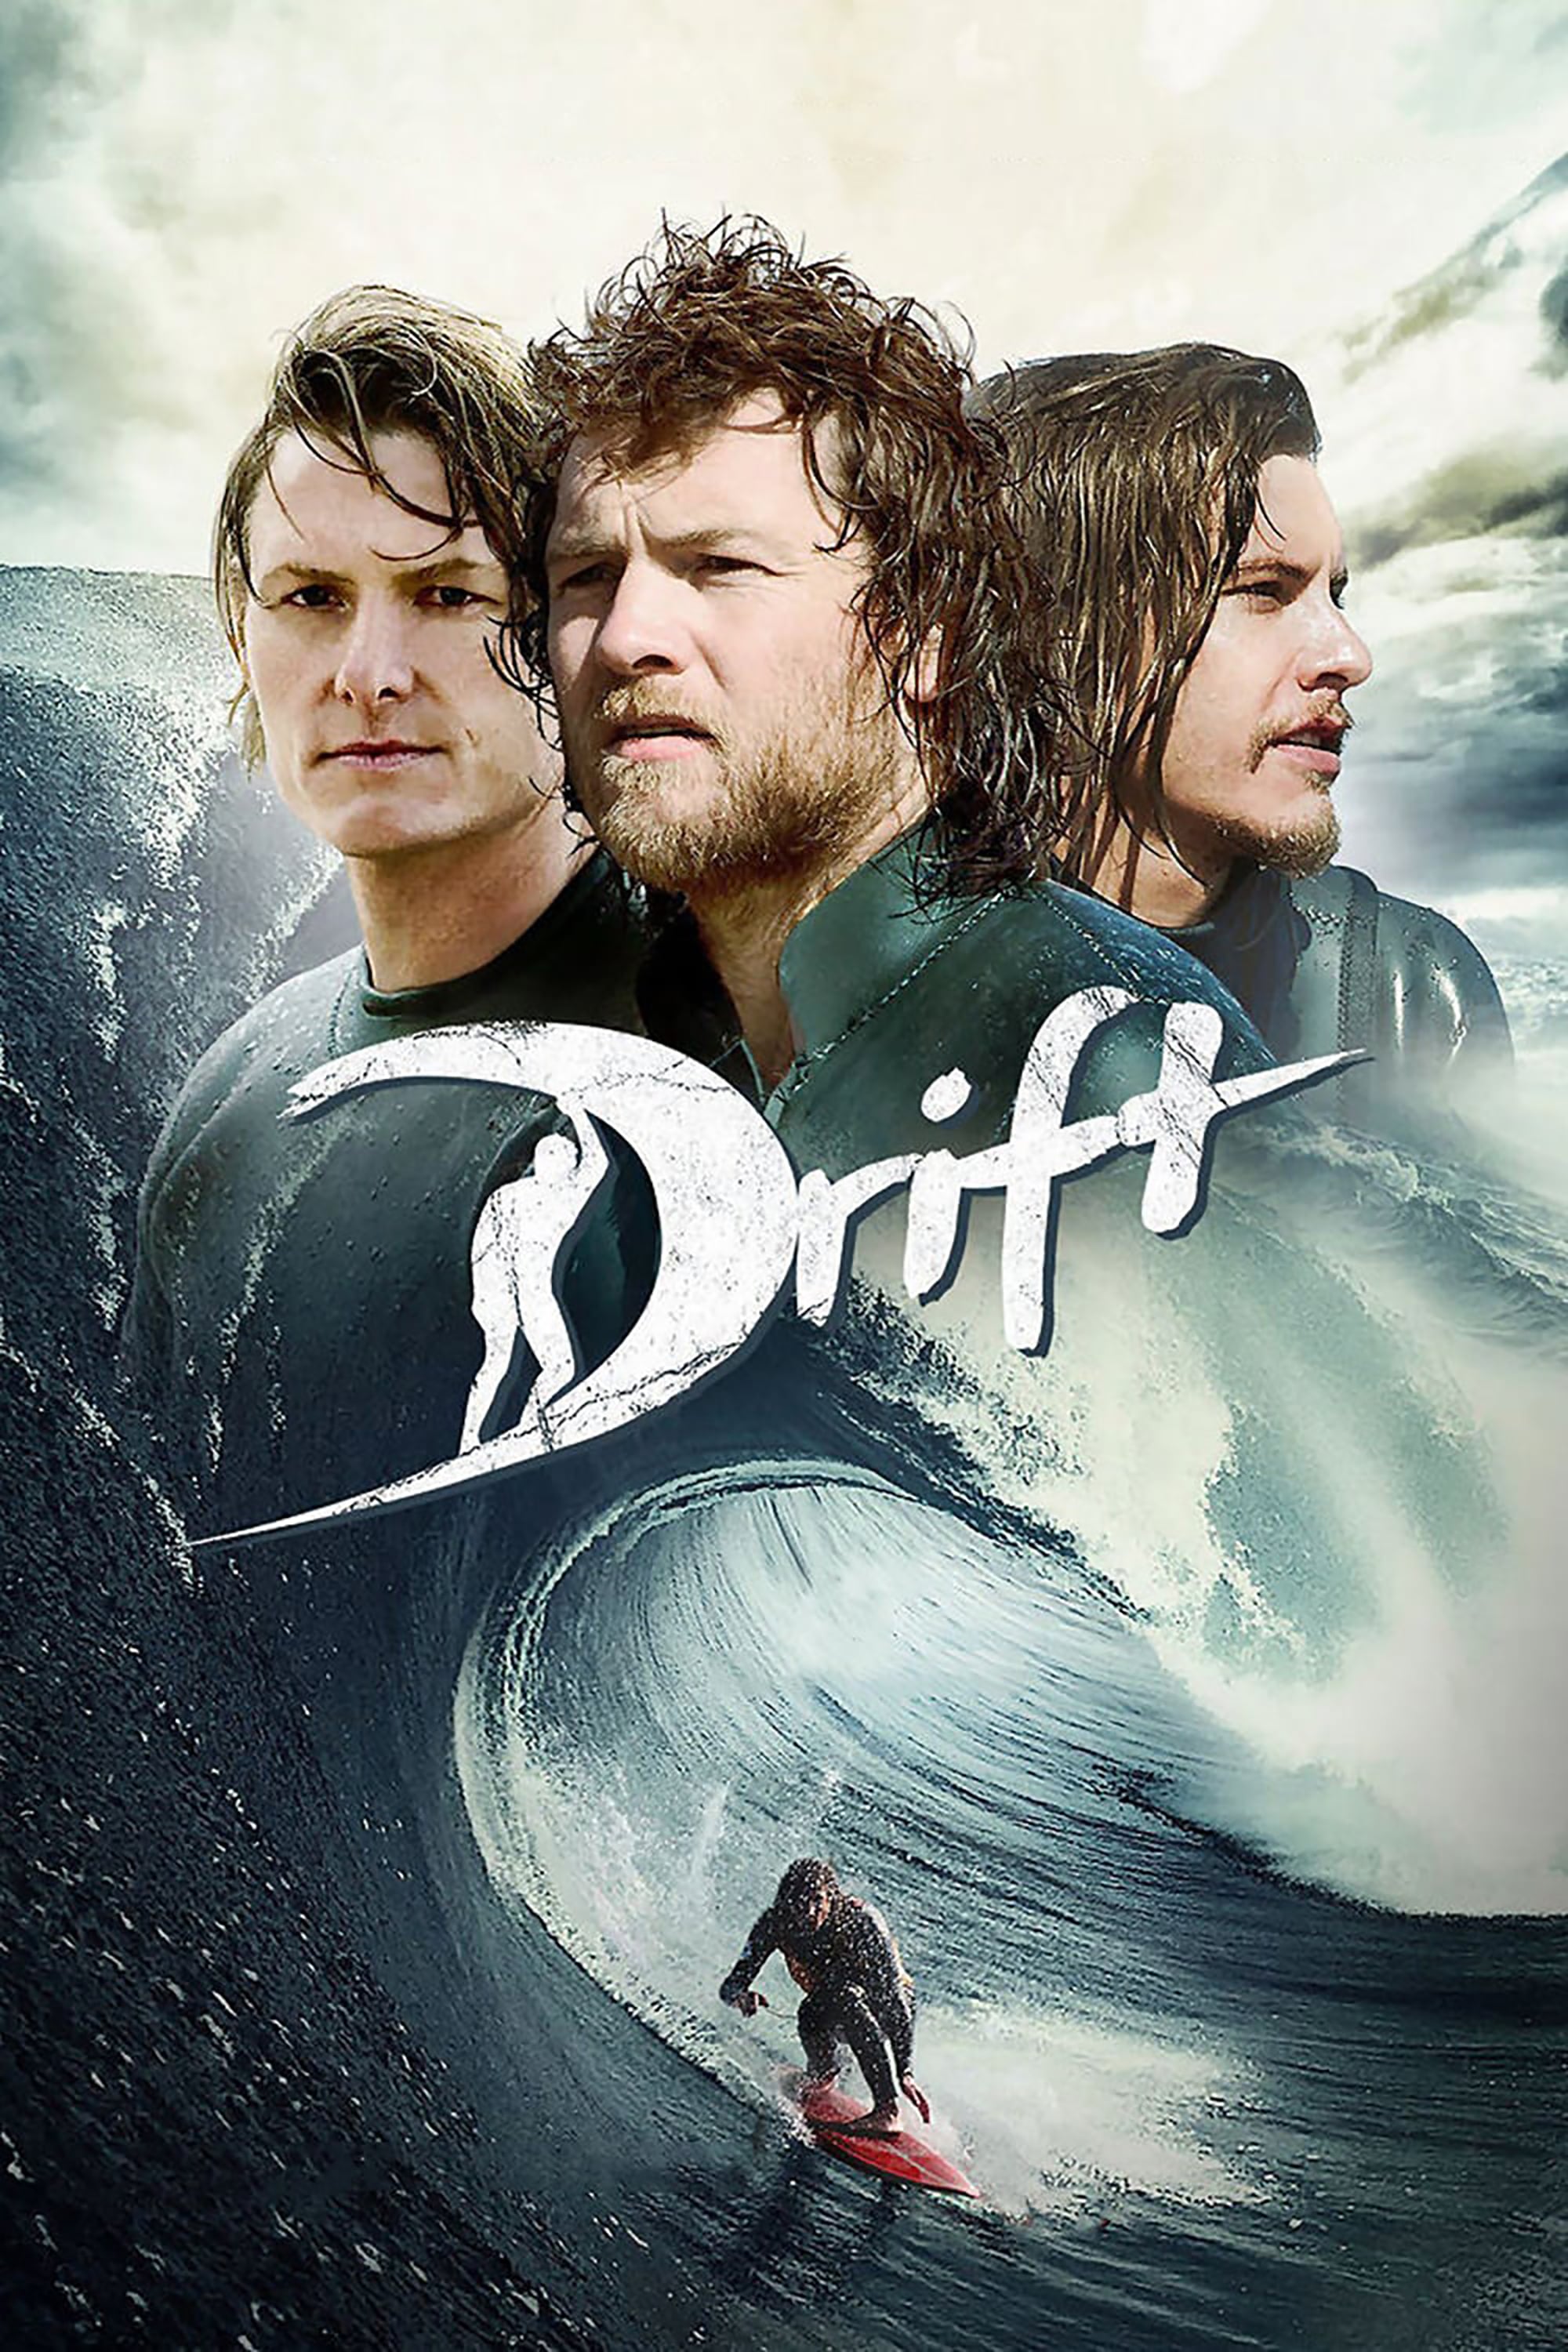 Plakat von "Drift - Besiege die Welle"